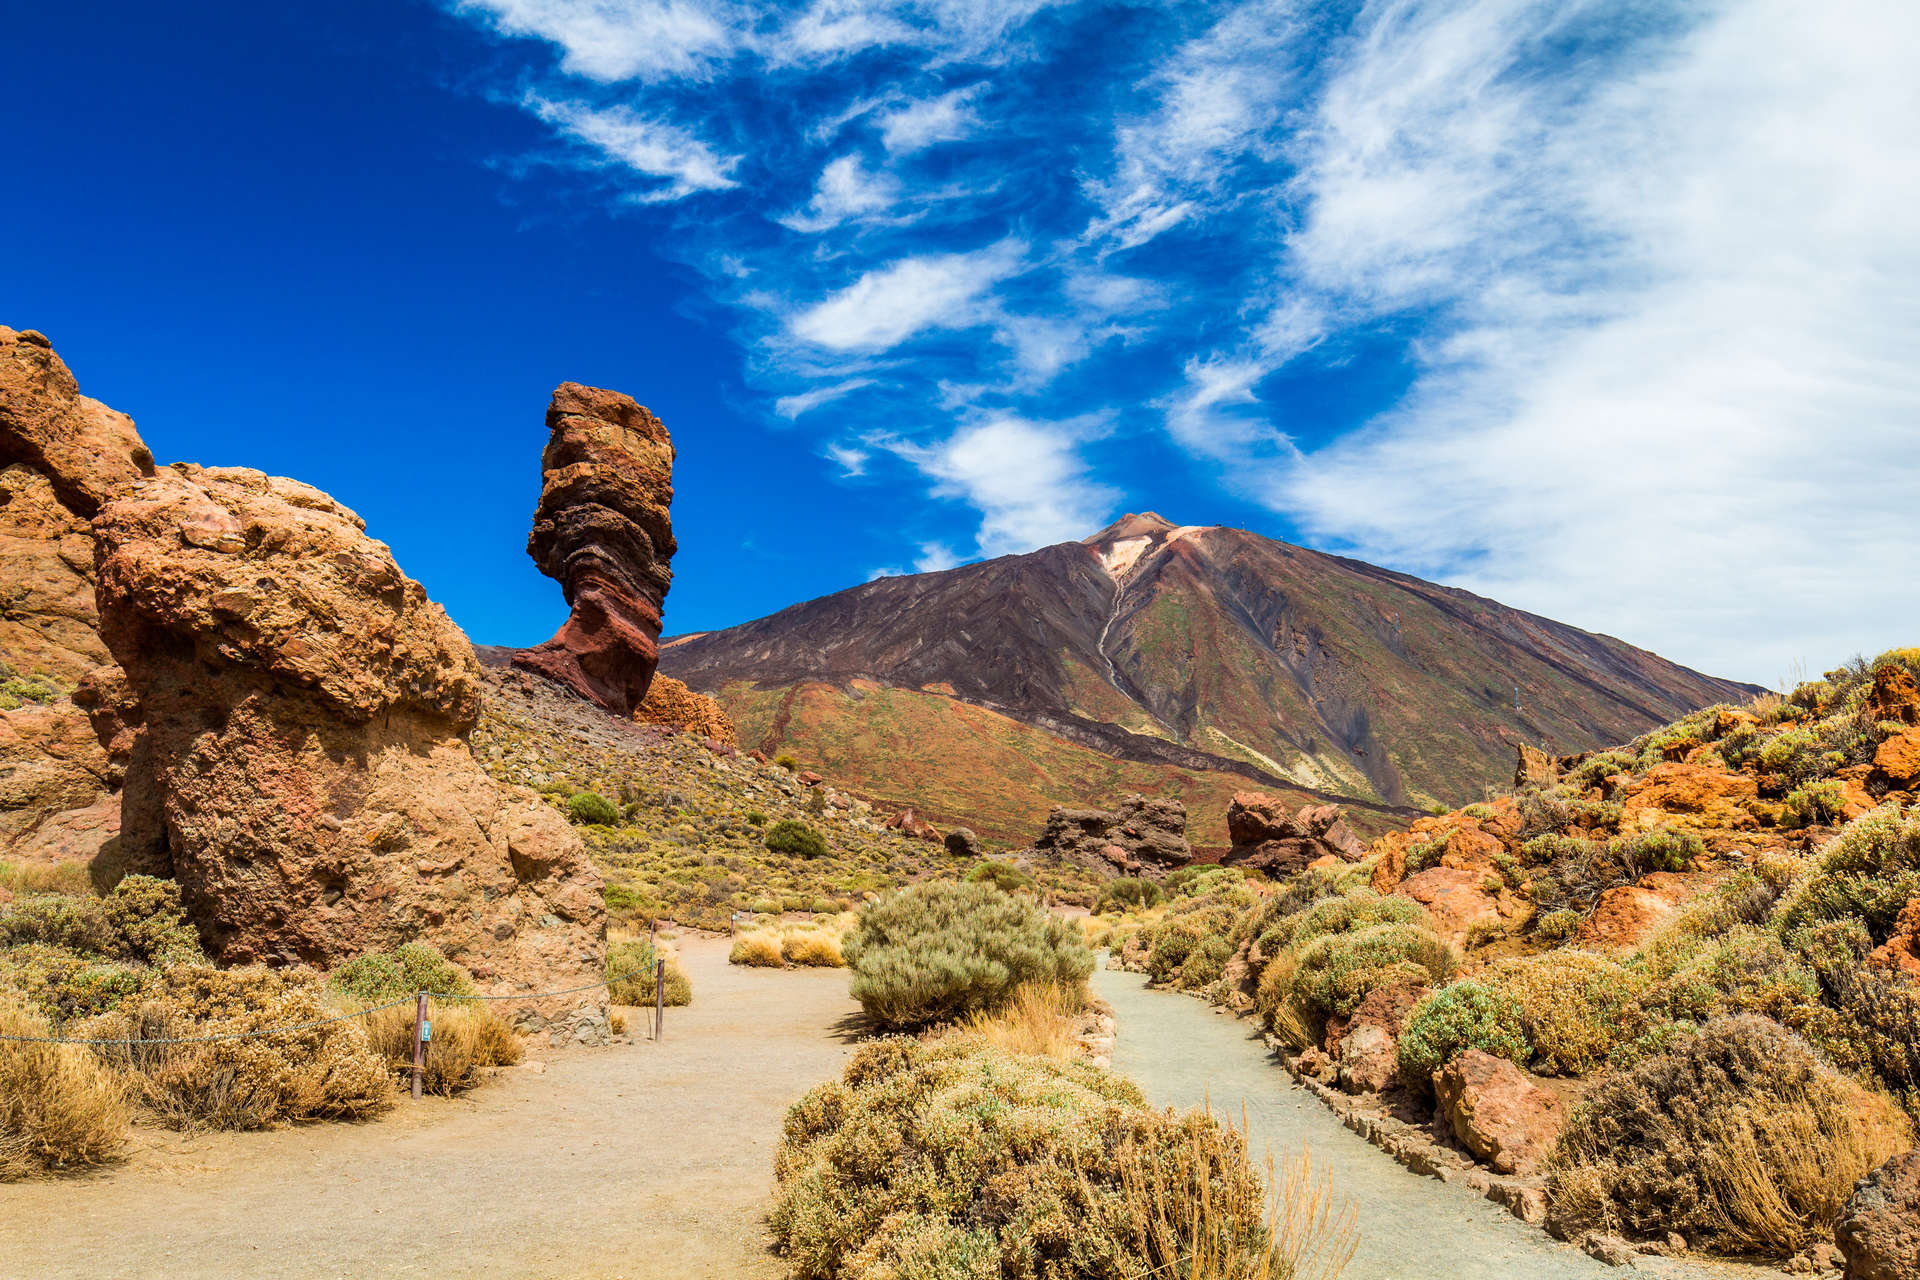 Striking rock formation at Mount Teide, Tenerife